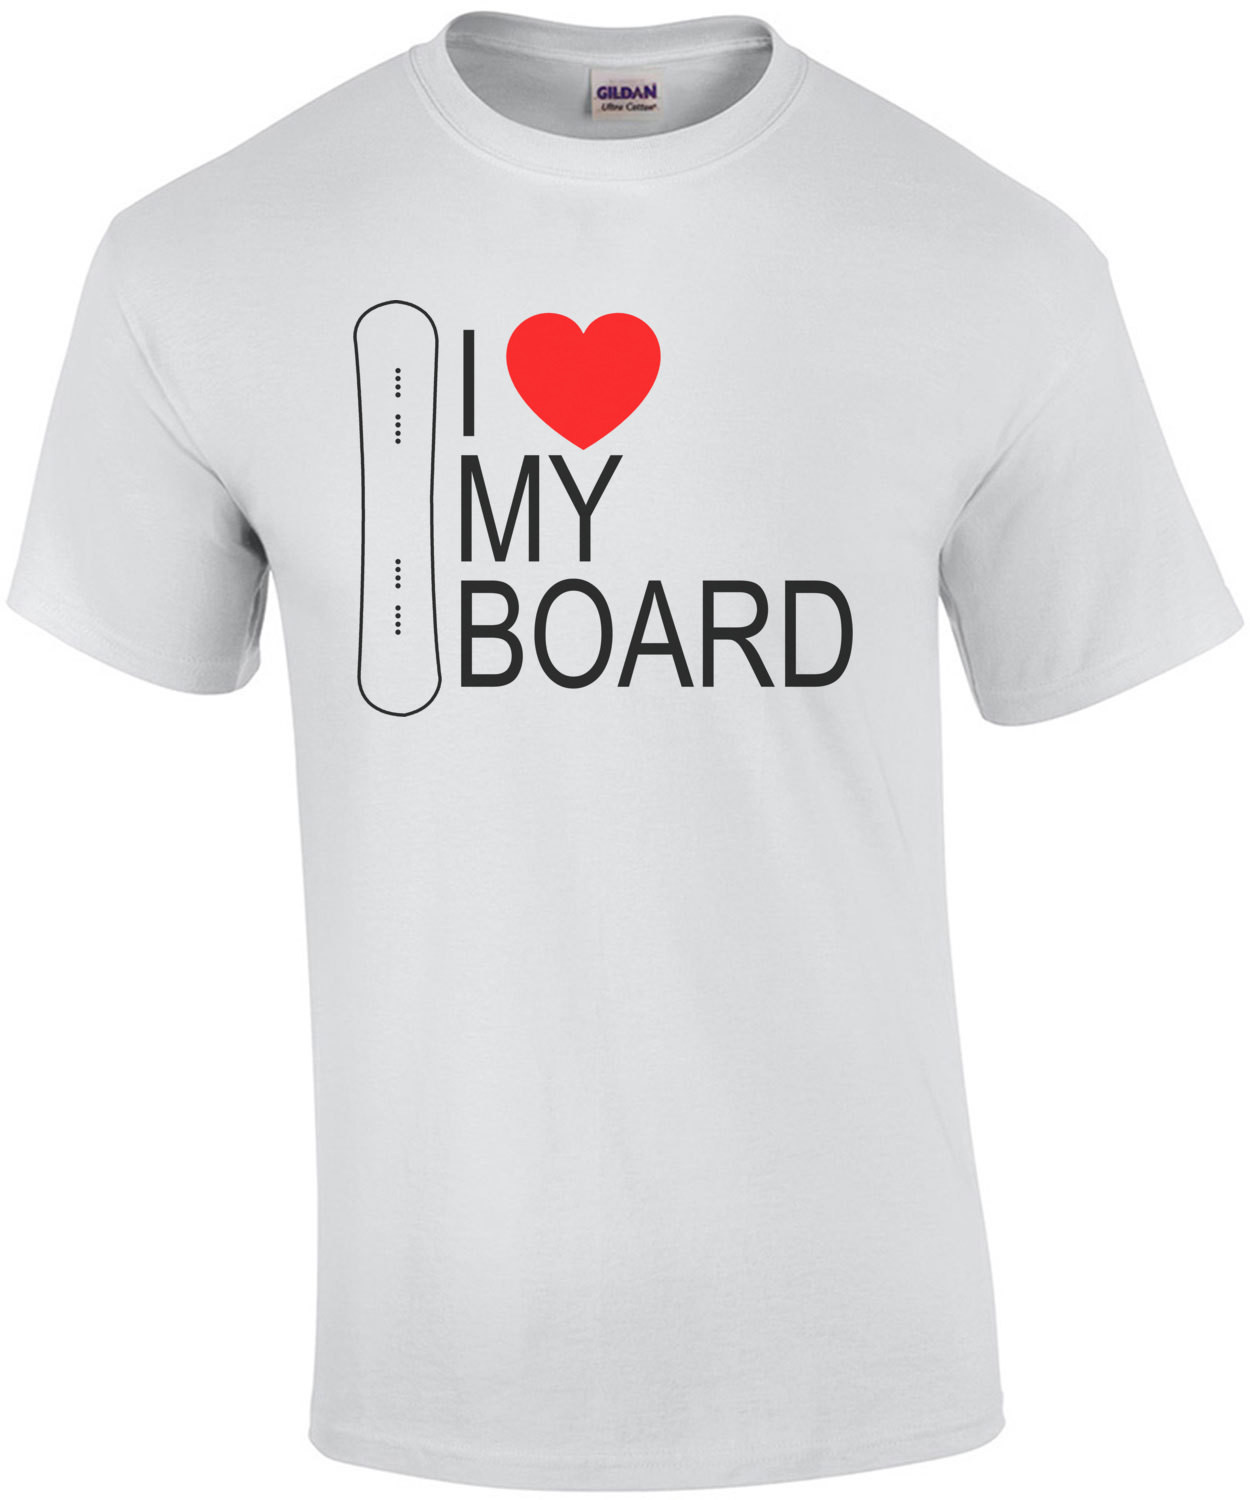 I Love My Board T-Shirt